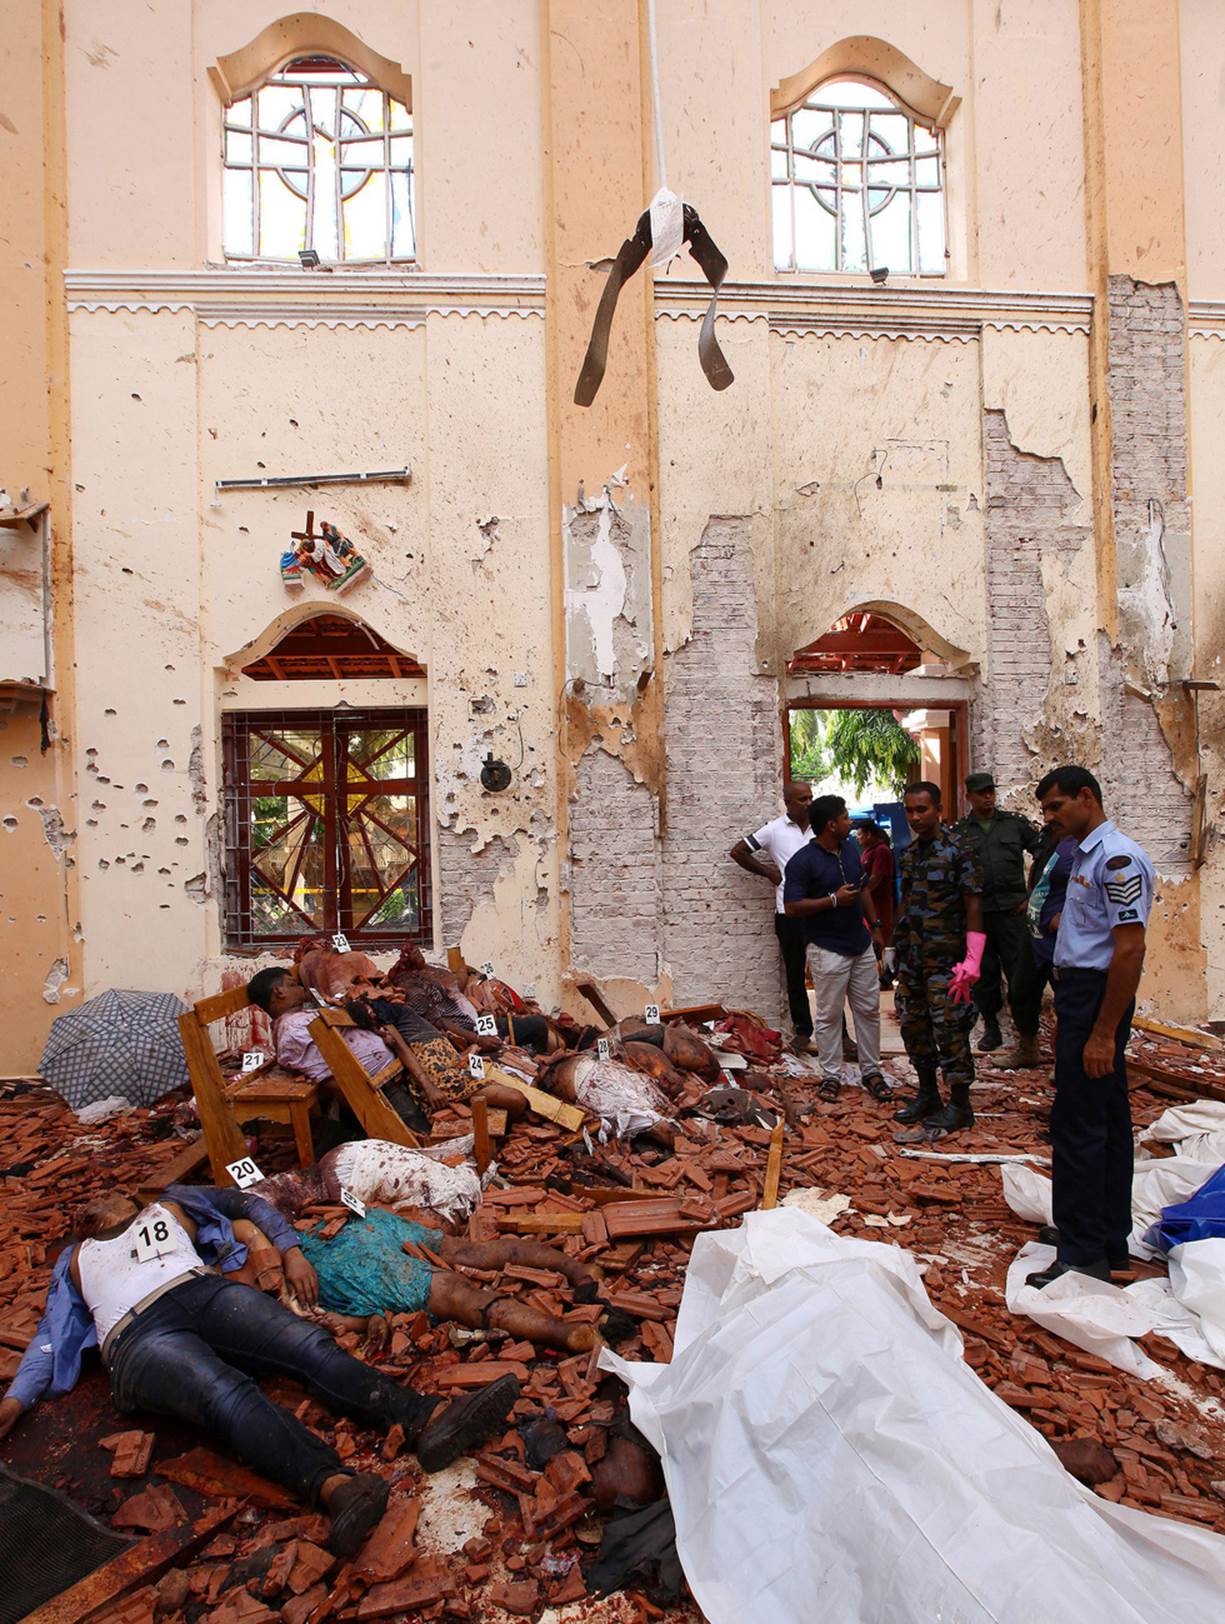 Khung cảnh kinh hoàng trong nhà thờ ở Negombo - Ảnh: REUTERS